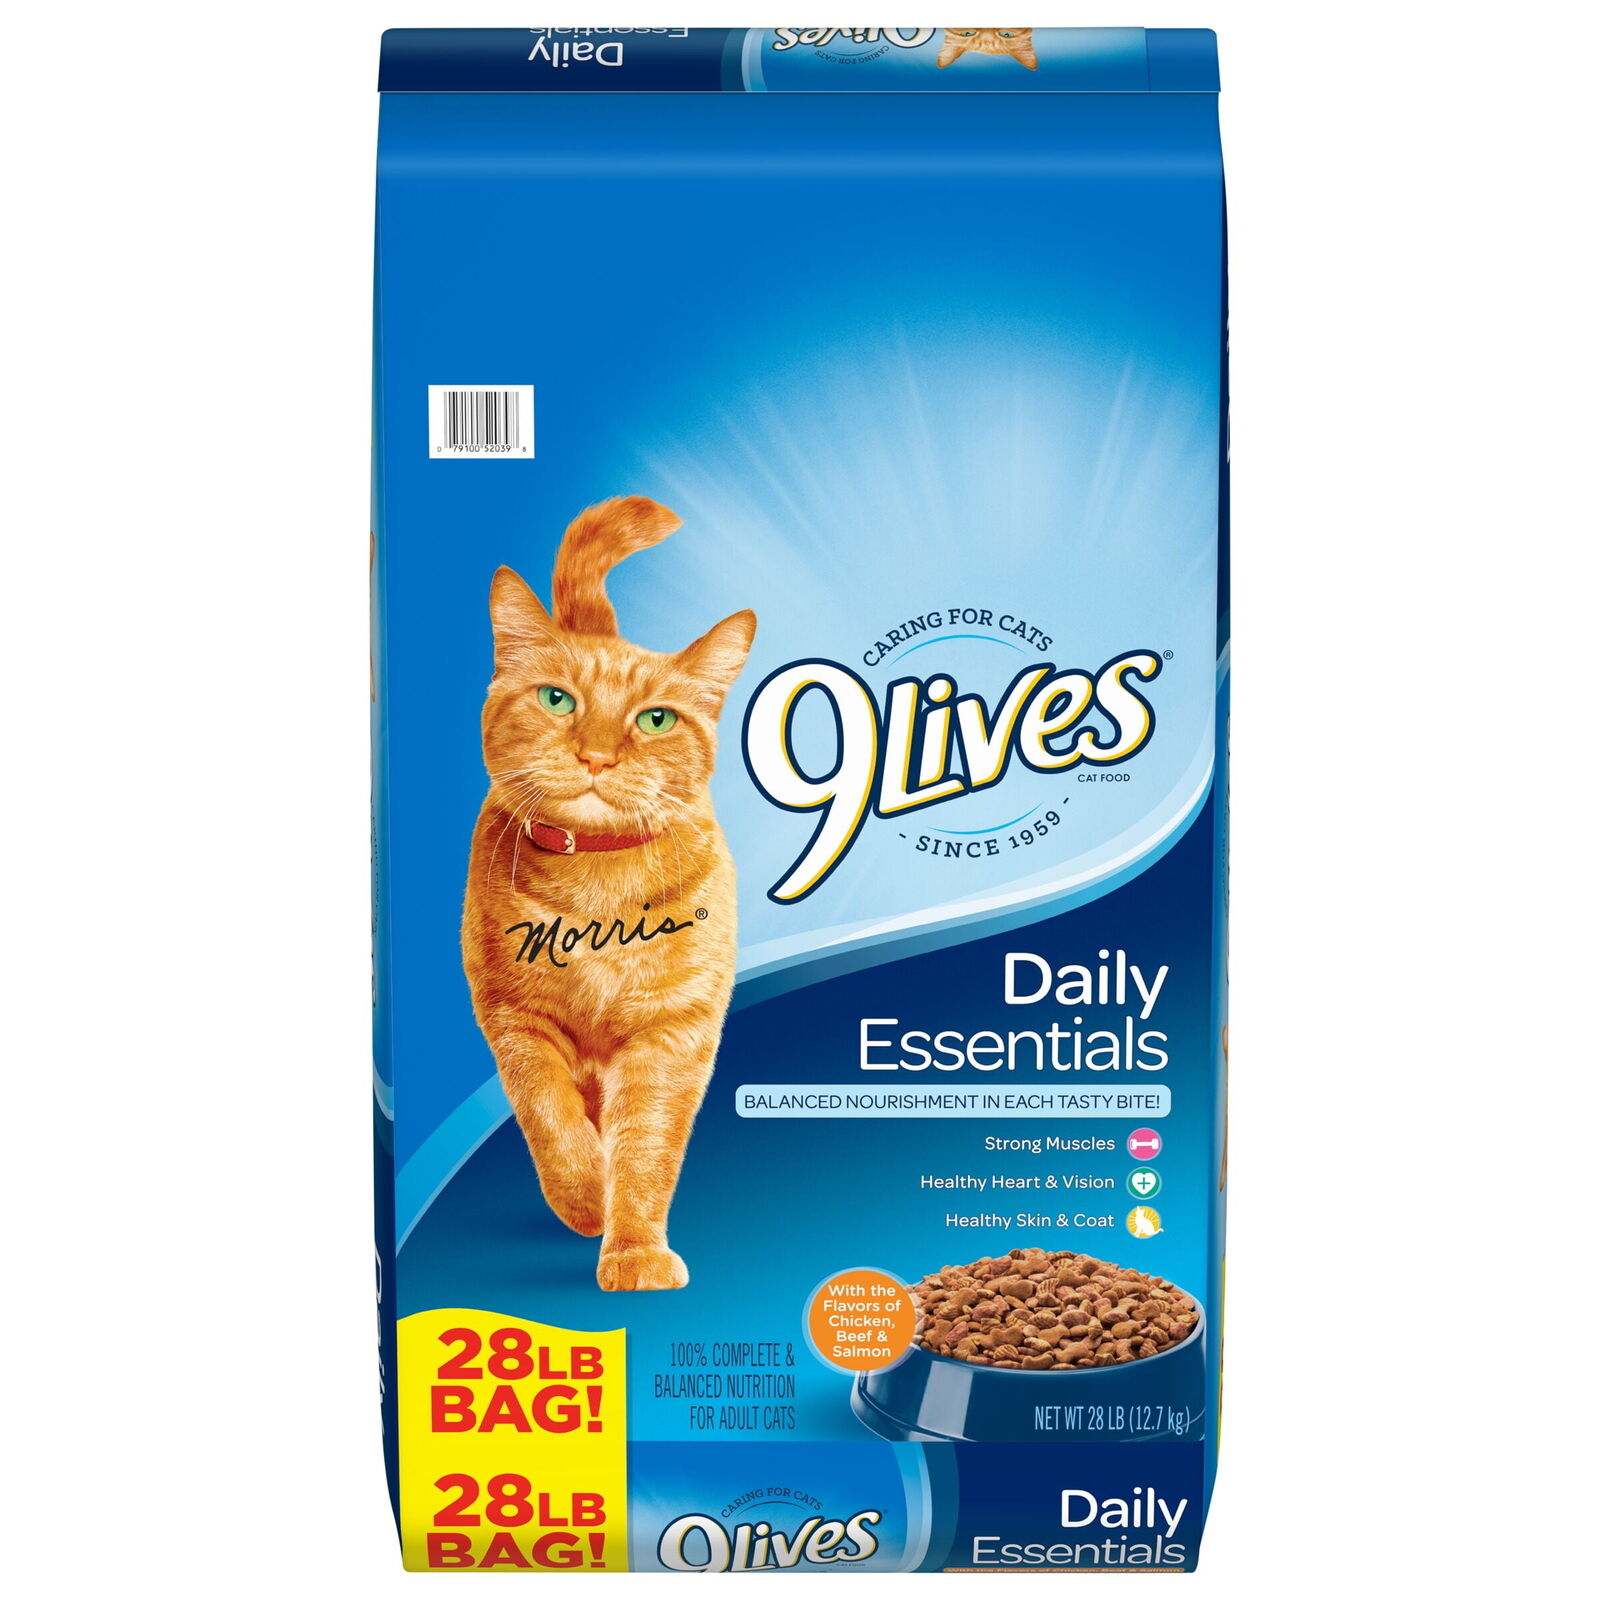 9Lives Daily Essentials Cat Food, 28-Pound Bag